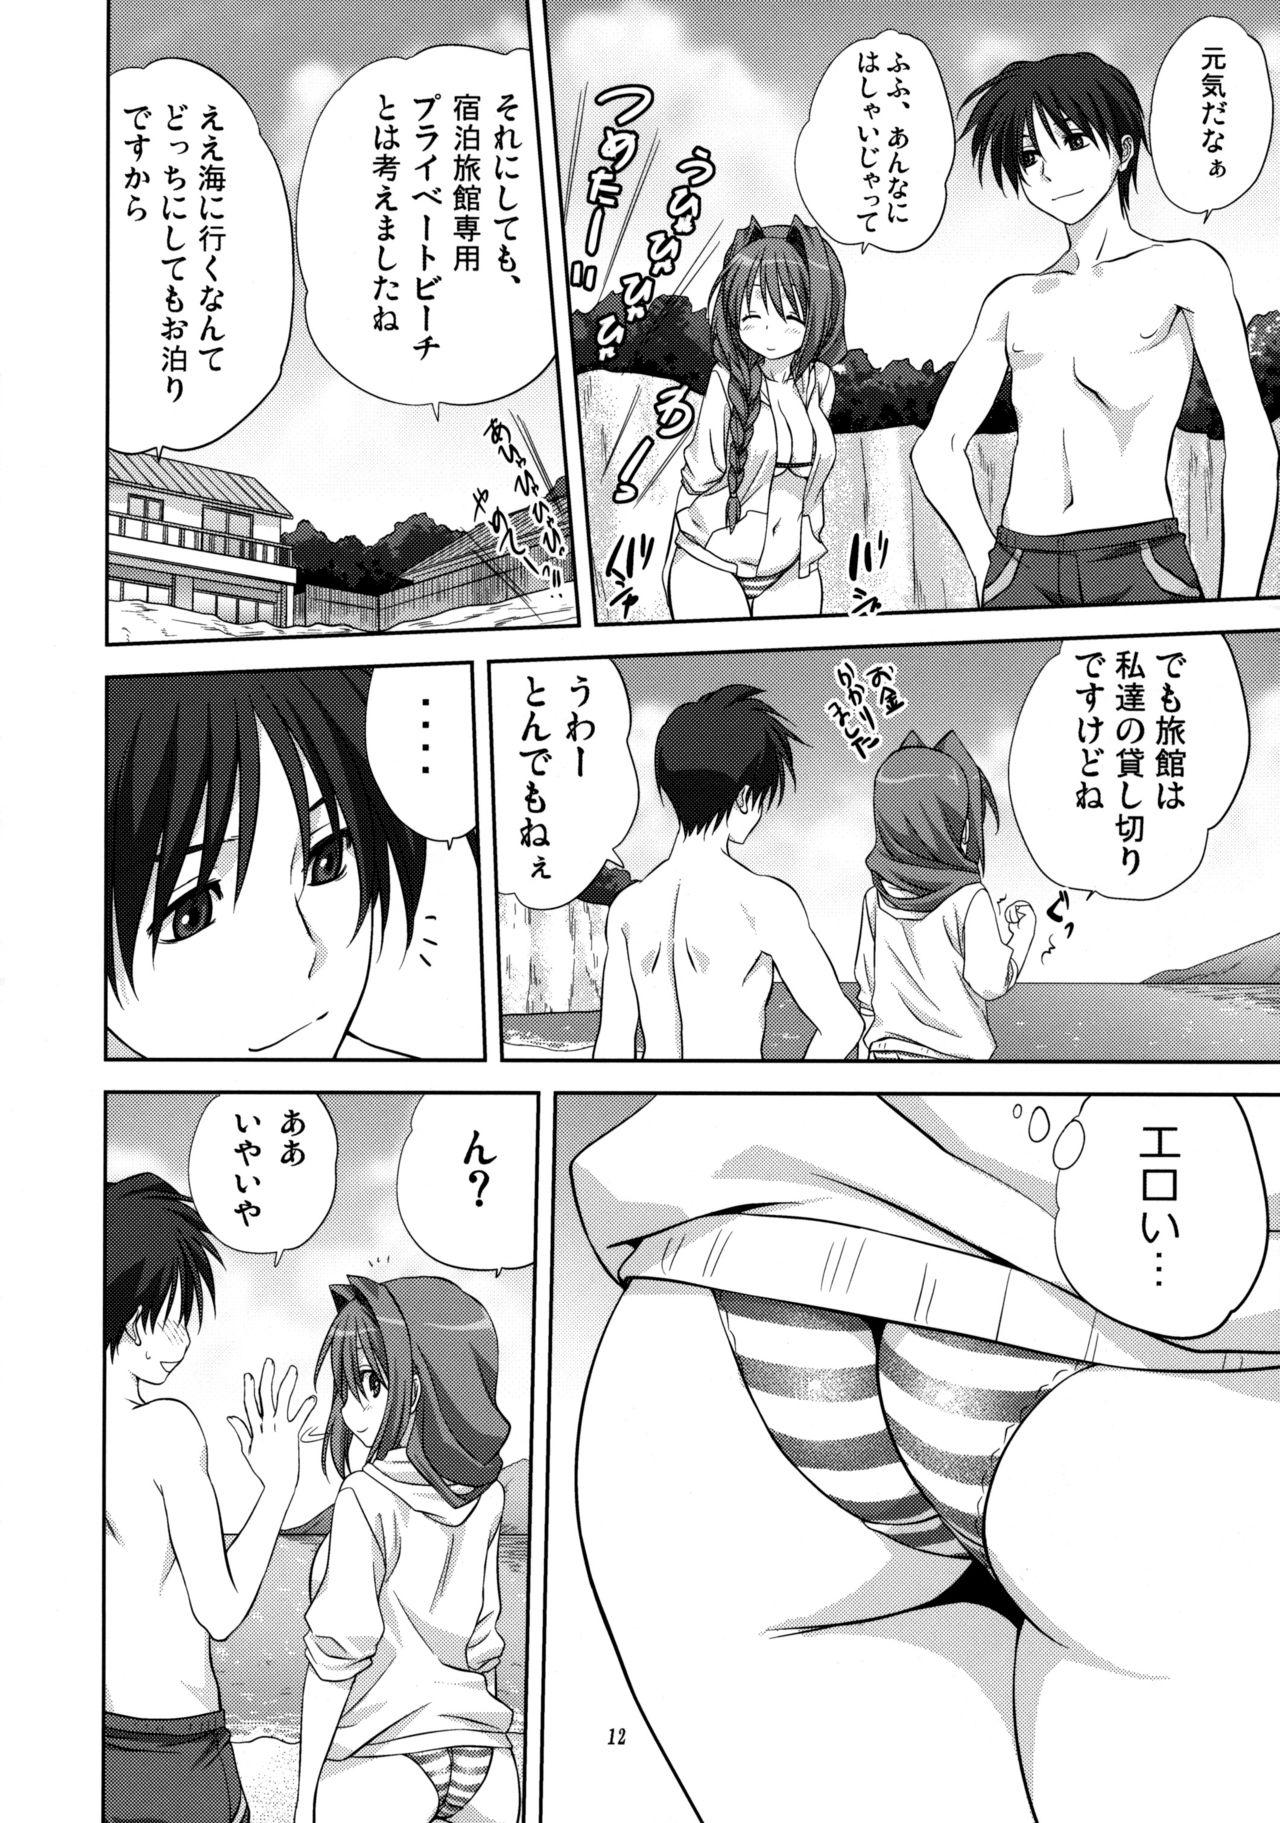 Porra Akiko-san to Issho 8 - Kanon Shower - Page 11